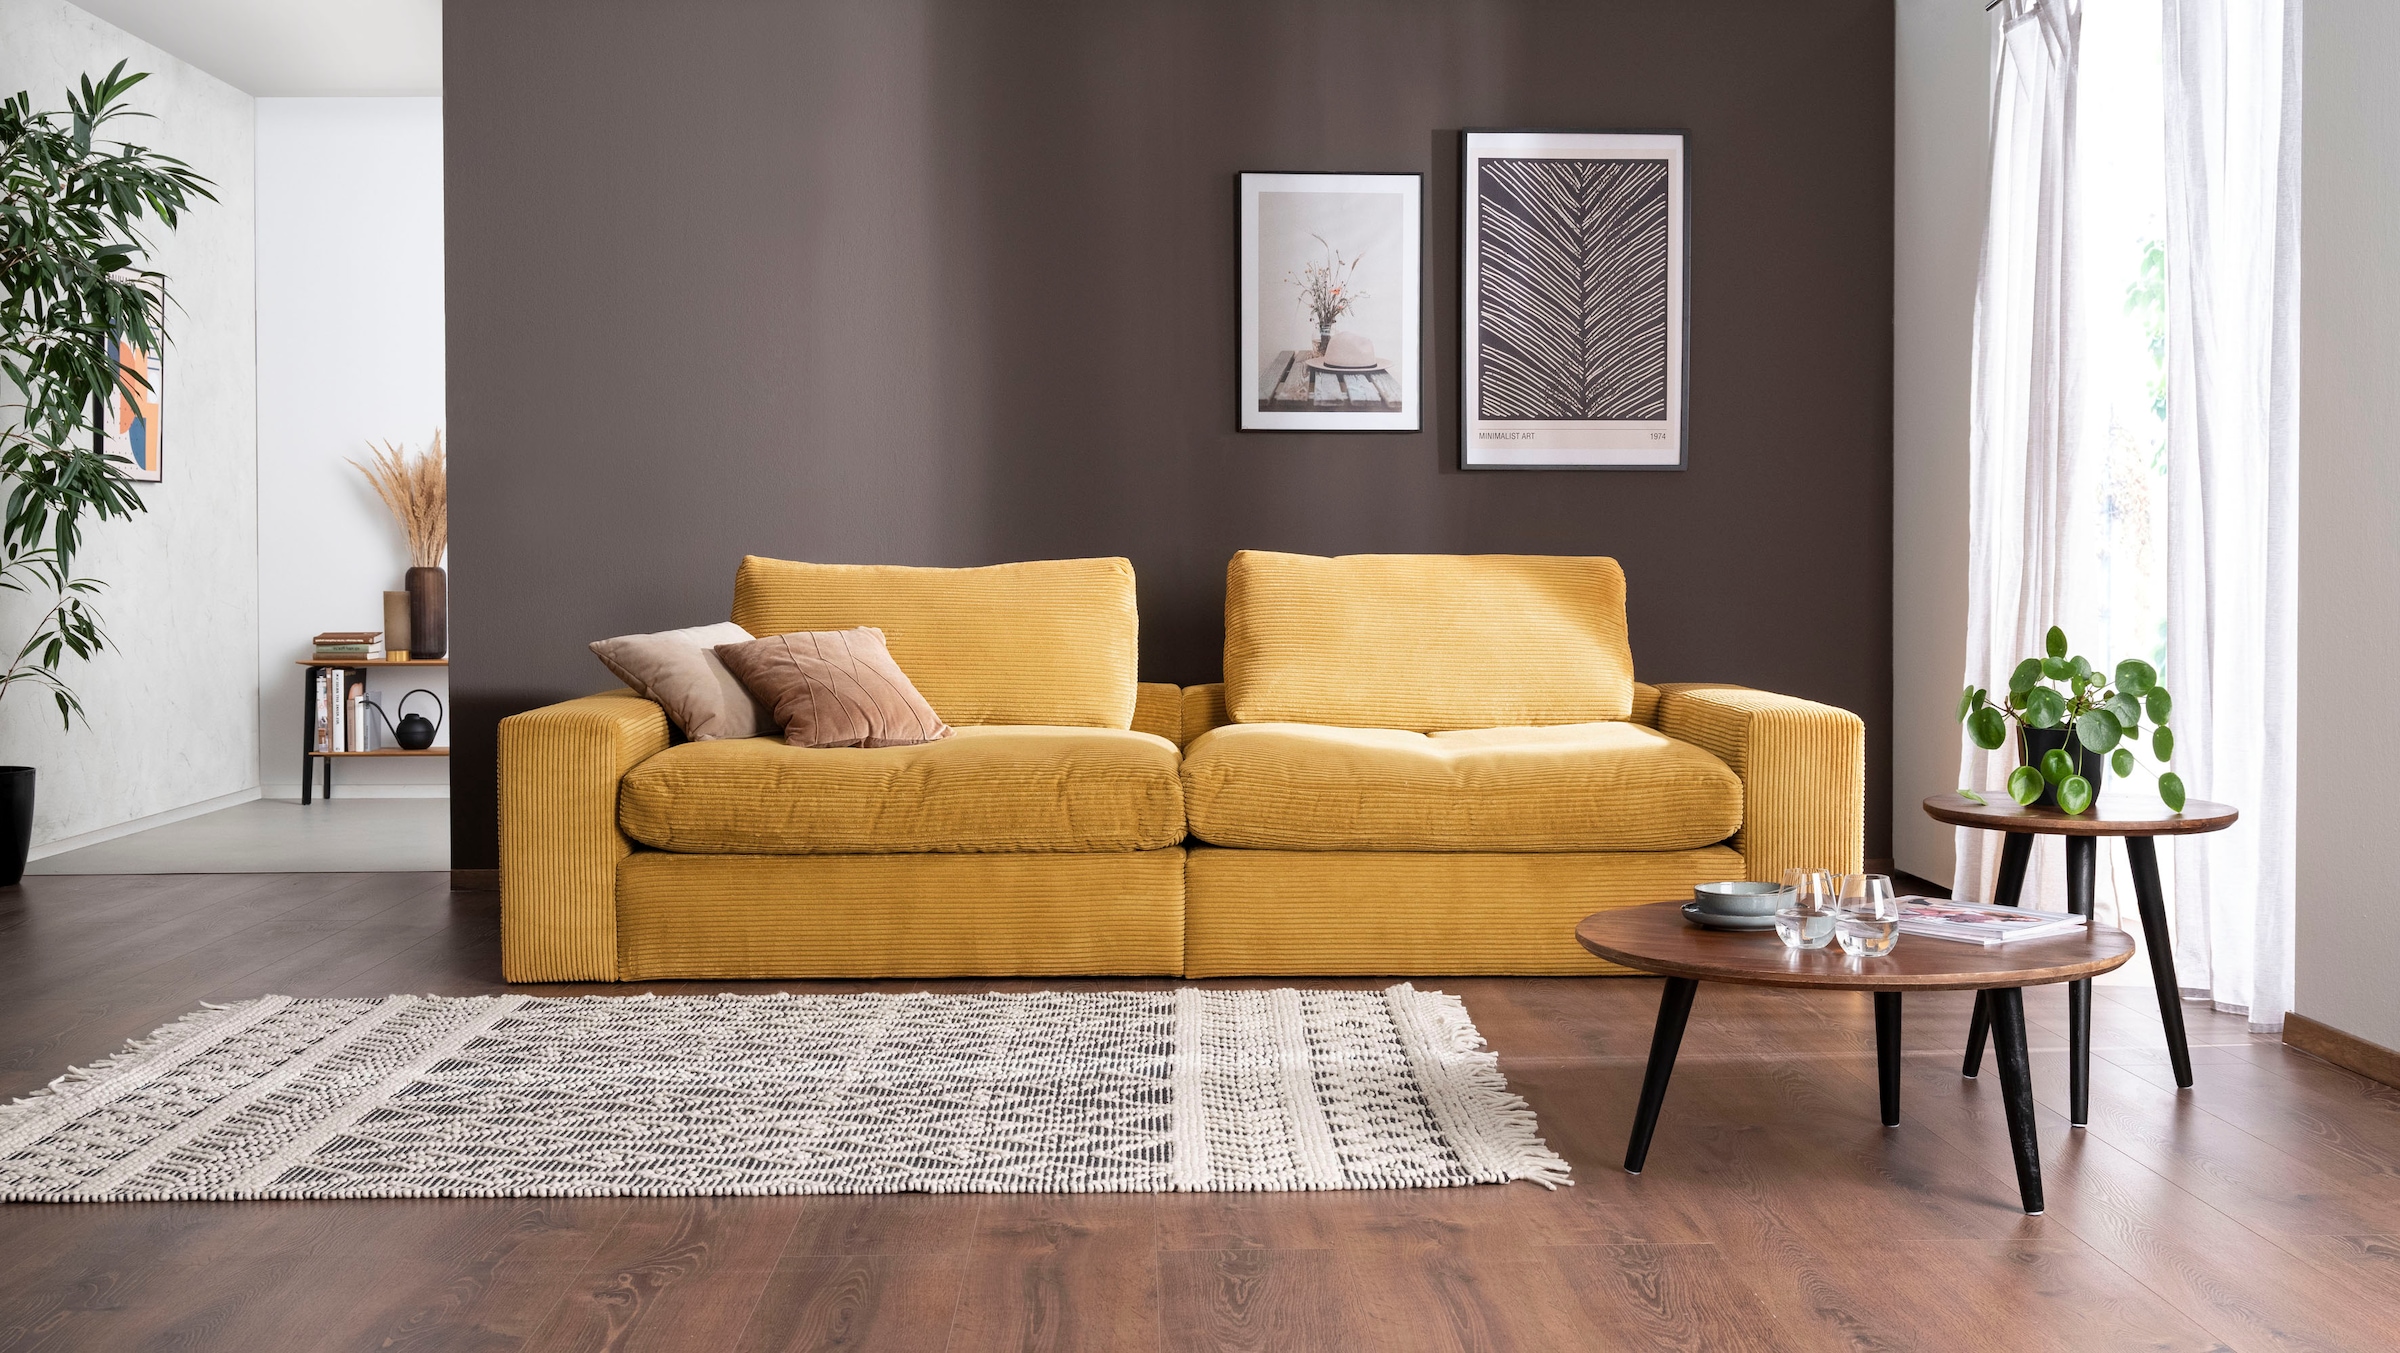 Big-Sofa »Sandy«, 296 cm breit und 123 cm tief, in modernem Cordstoff